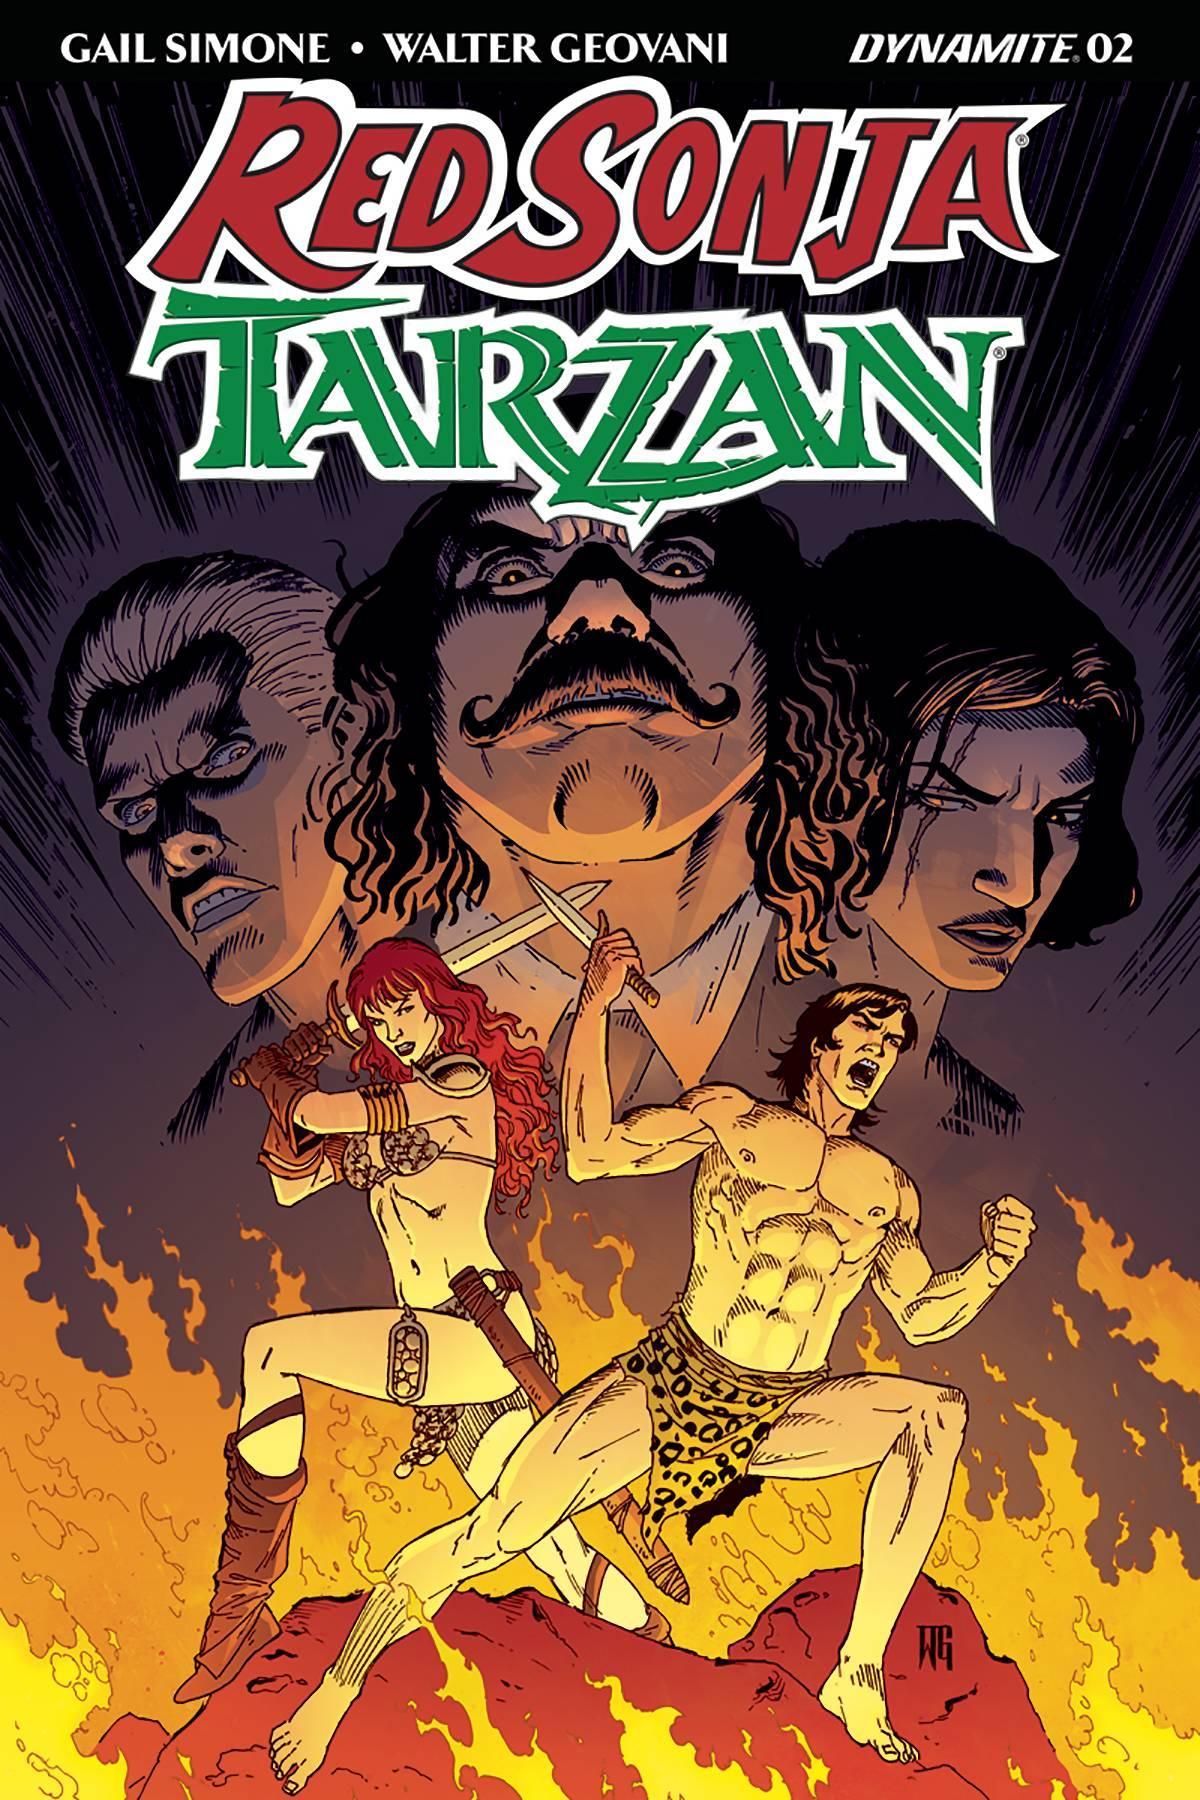 RED SONJA TARZAN #2 CVR B GEOVANI - Kings Comics